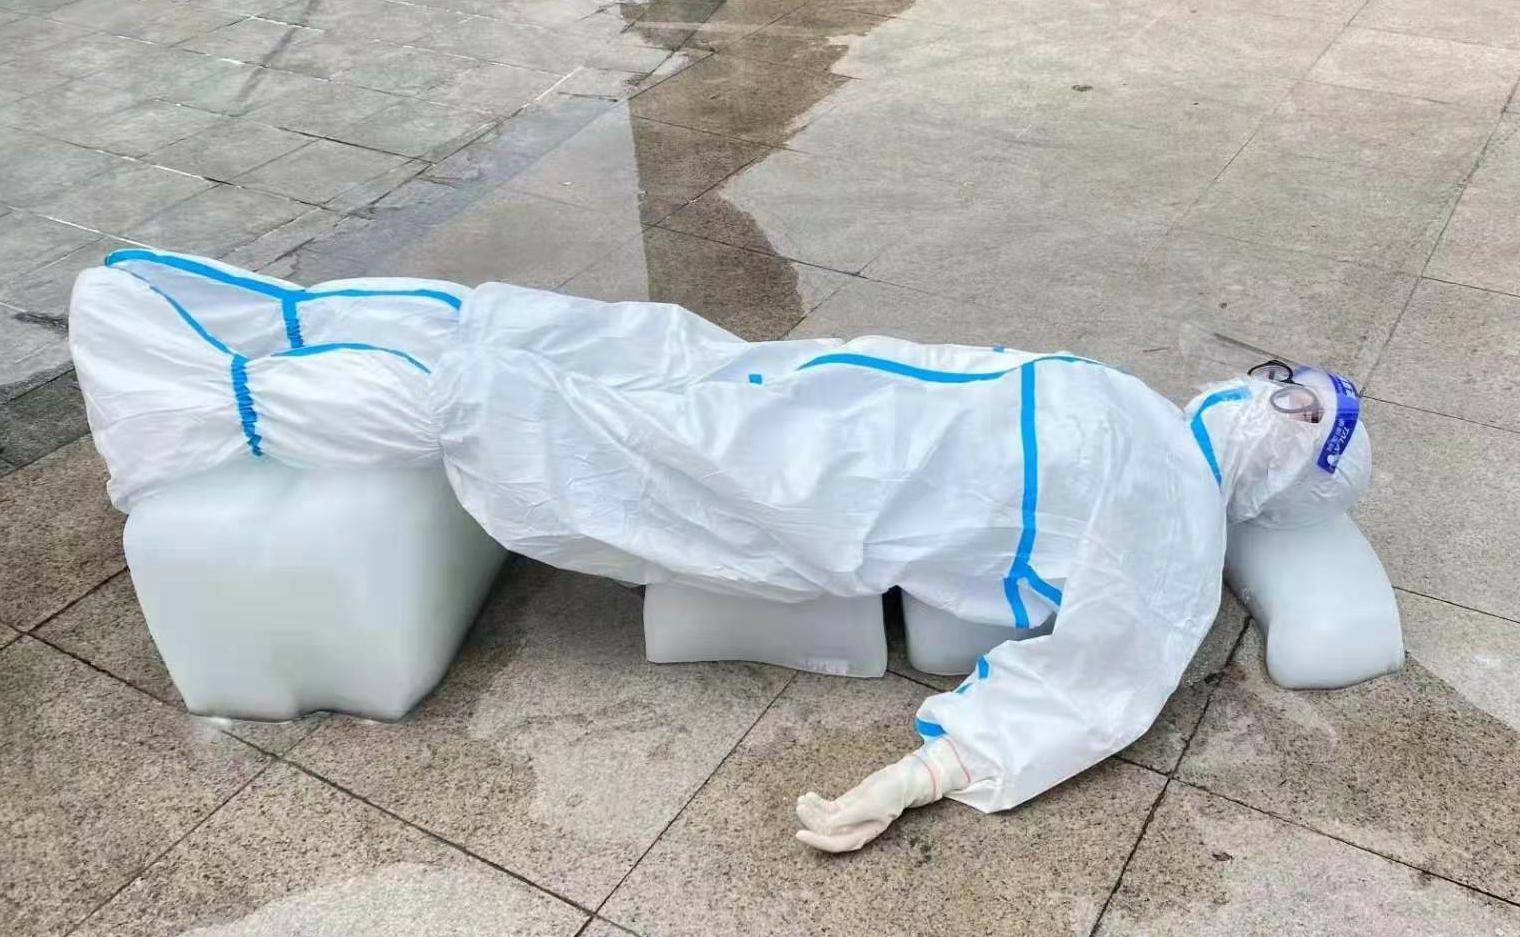 穿防护服的核酸检测人员躺在冰块上给自己降温……连日来,一张"大白"